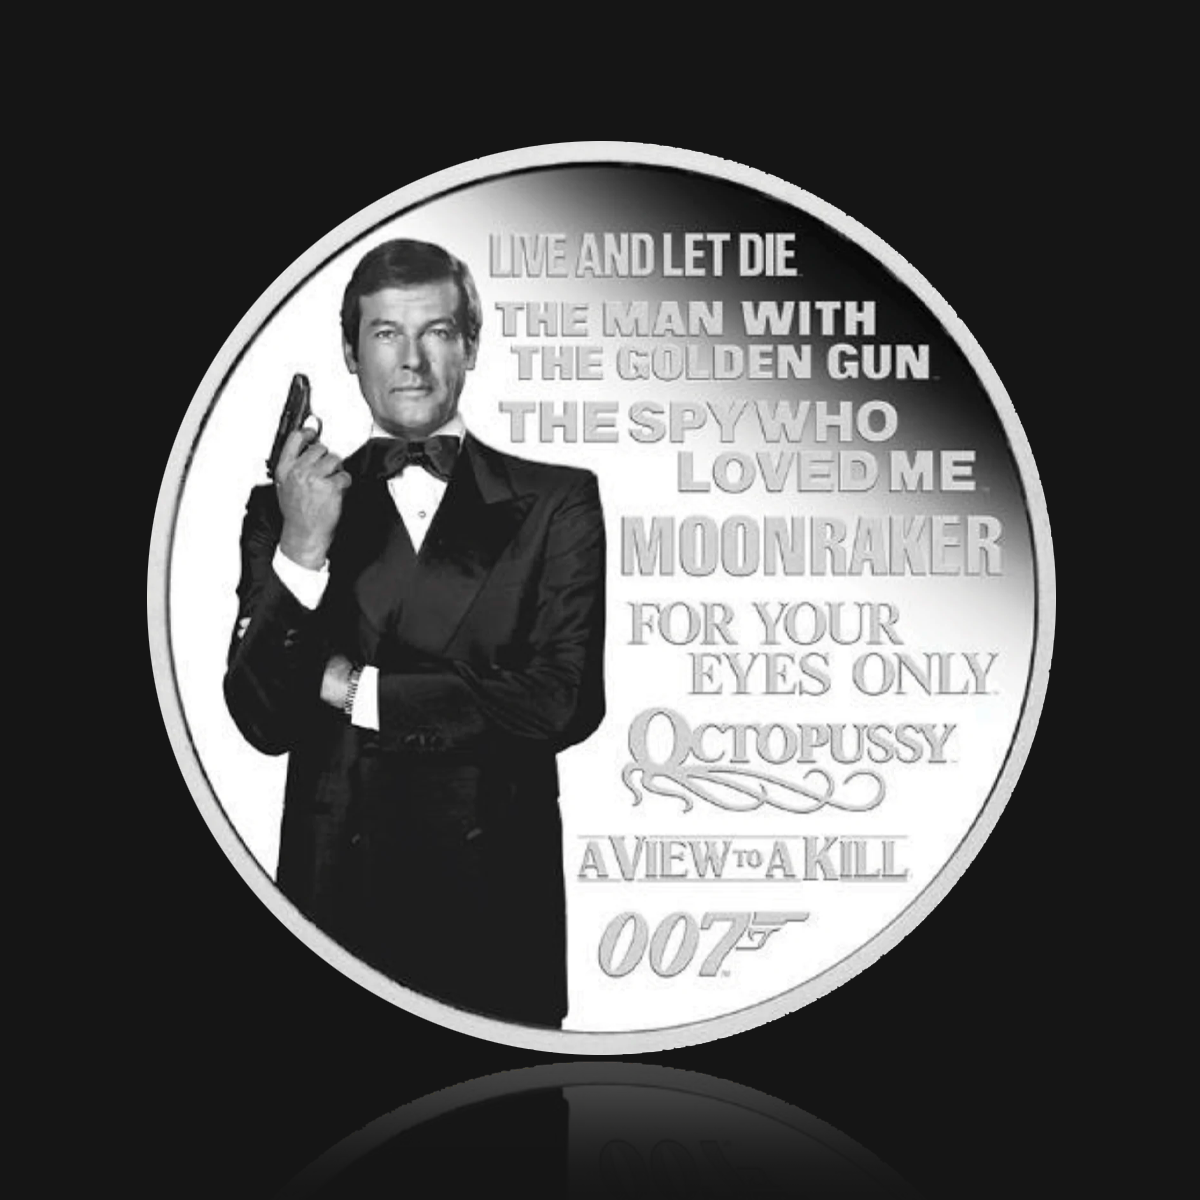 James Bond Roger Moore 1 Unze Silbermünze in Proof-Form – nummerierte Ausgabe – von der Perth Mint